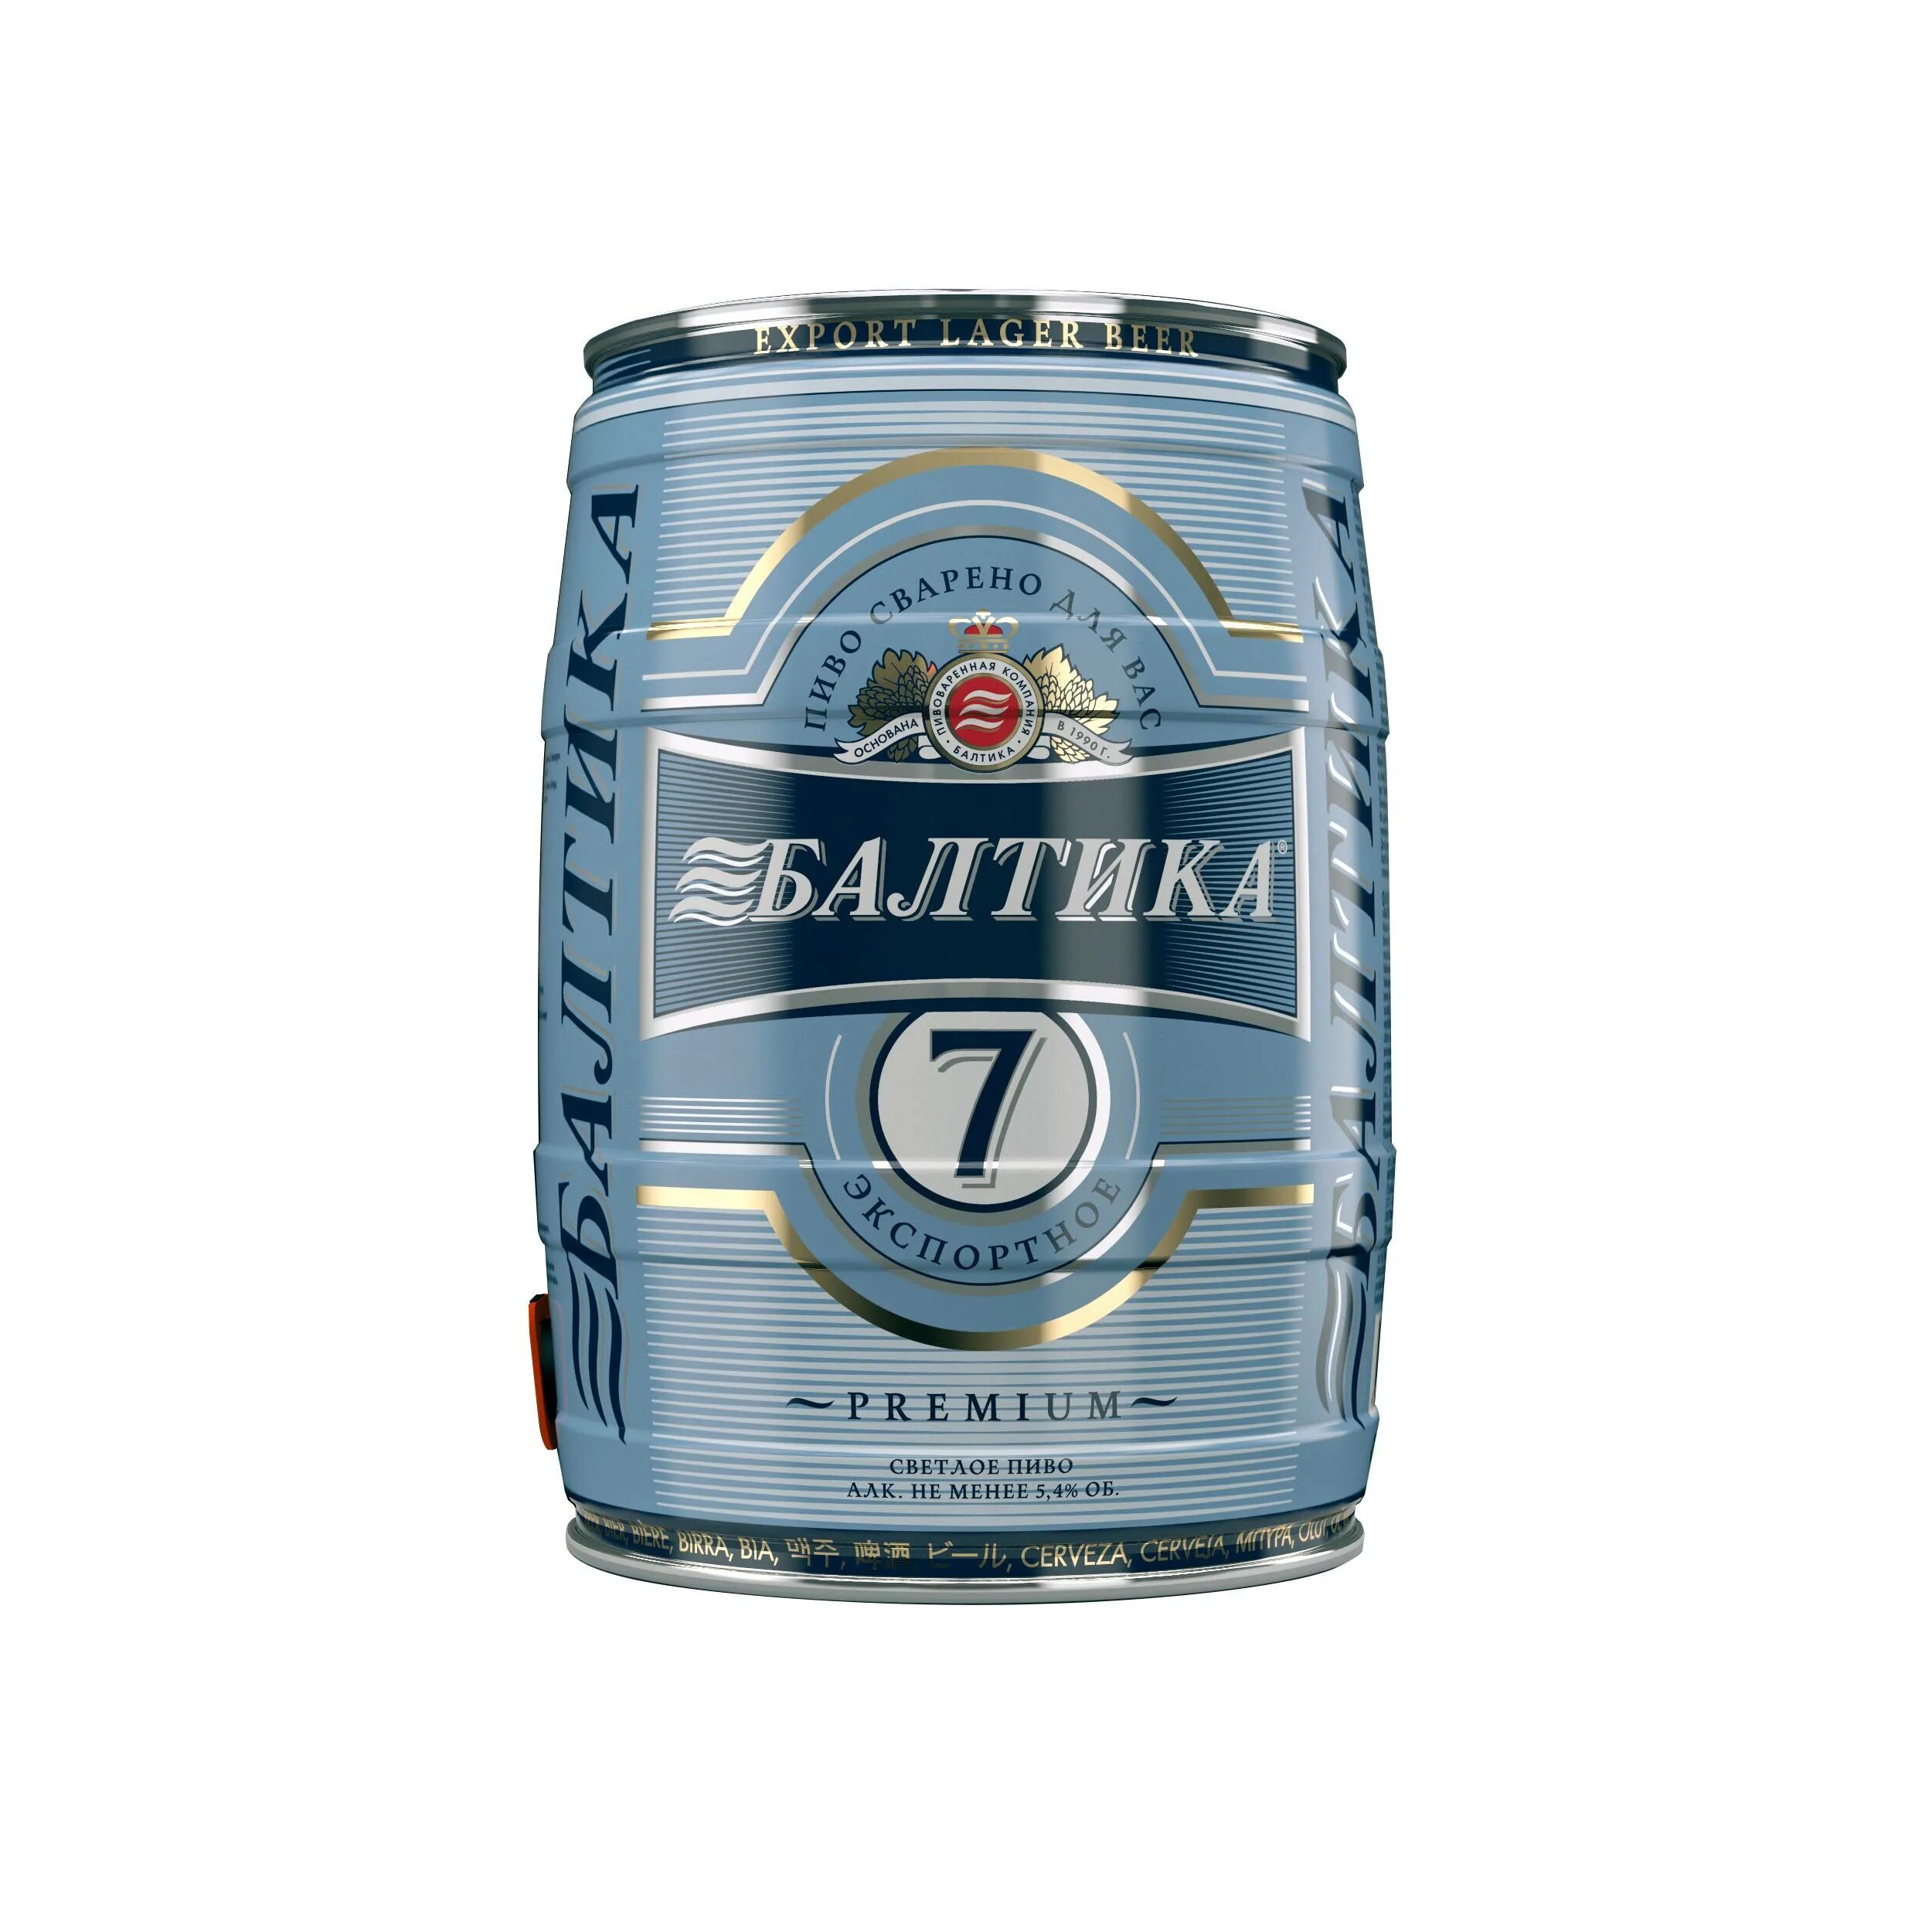 Пиво семерка. Бочонок 5 литров пиво Балтика. Пиво Балтика 7 1.5 литра. Пиво Балтика 7 1 литр.